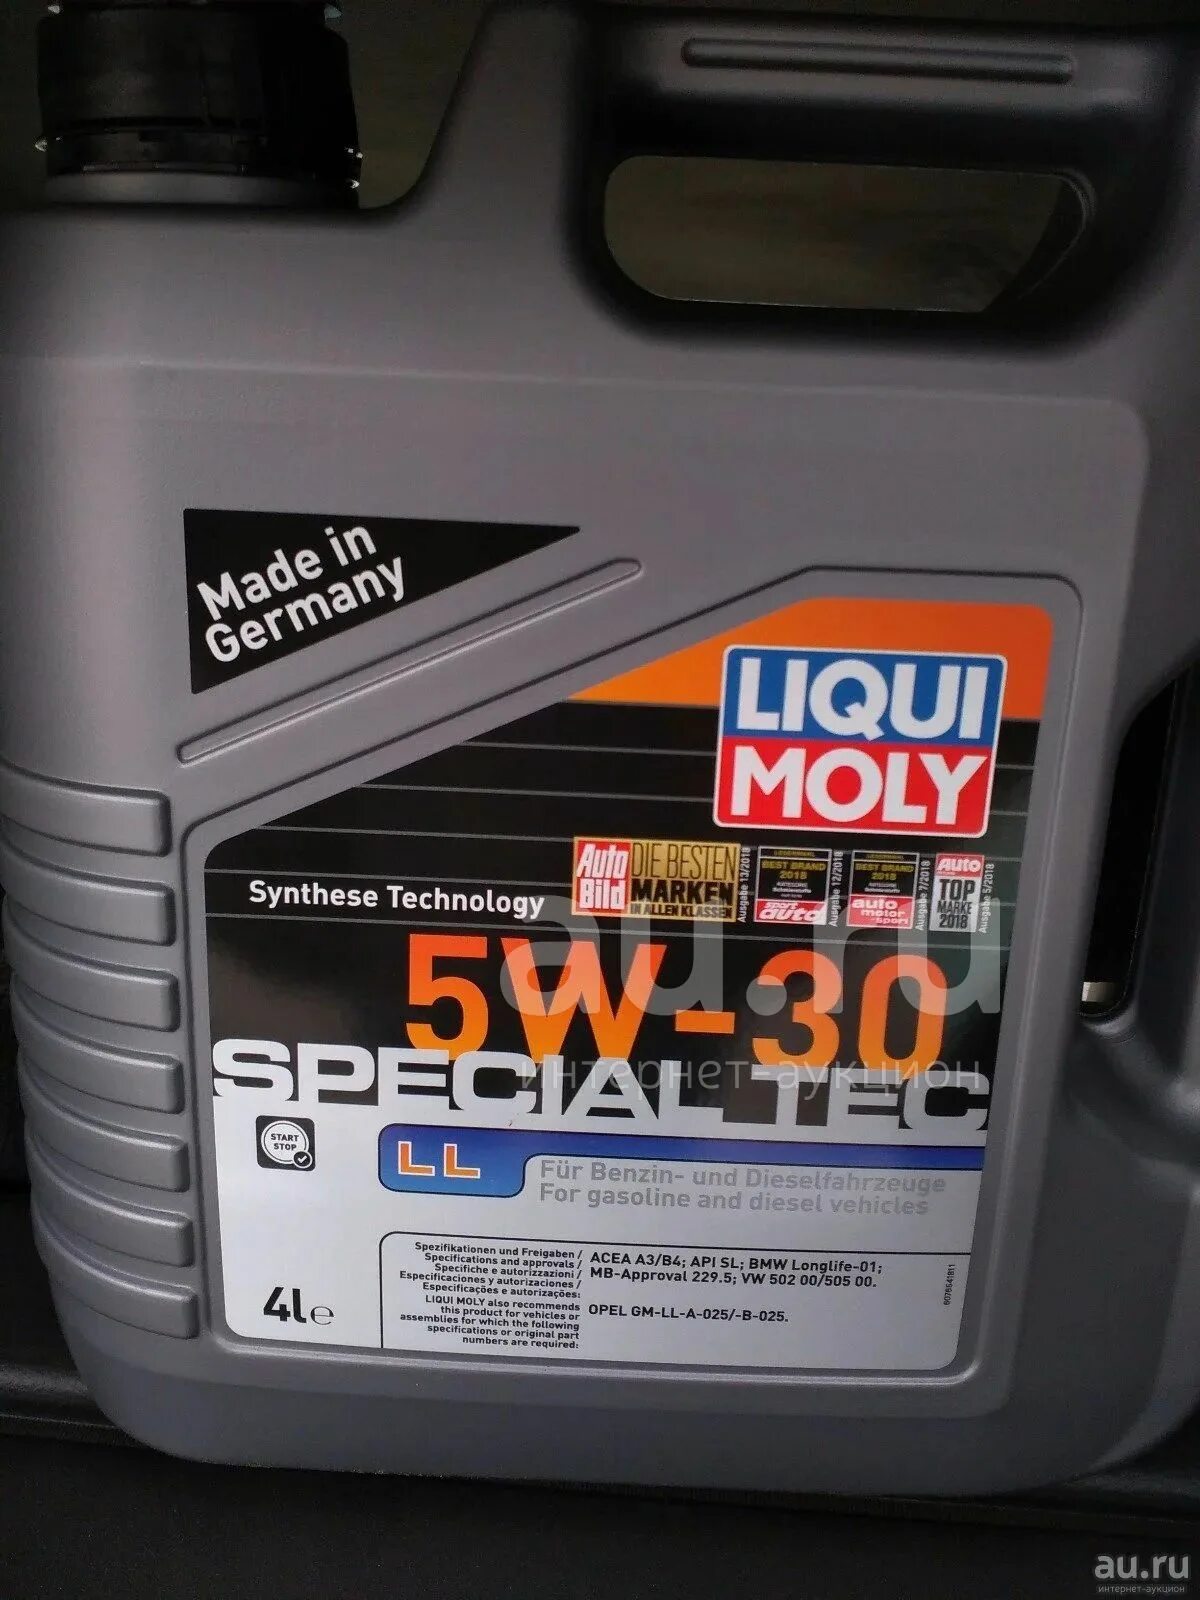 Моторное масло ликви моли 5. Liqui Moly Special Tec ll 5w-30. Масло Ликви моли 5w30 синтетика. Моторное масло Liqui Moly 5w30 Special Tec ll для генератора. Liqui Moly "Special Tec ll 5w-30", 5л.